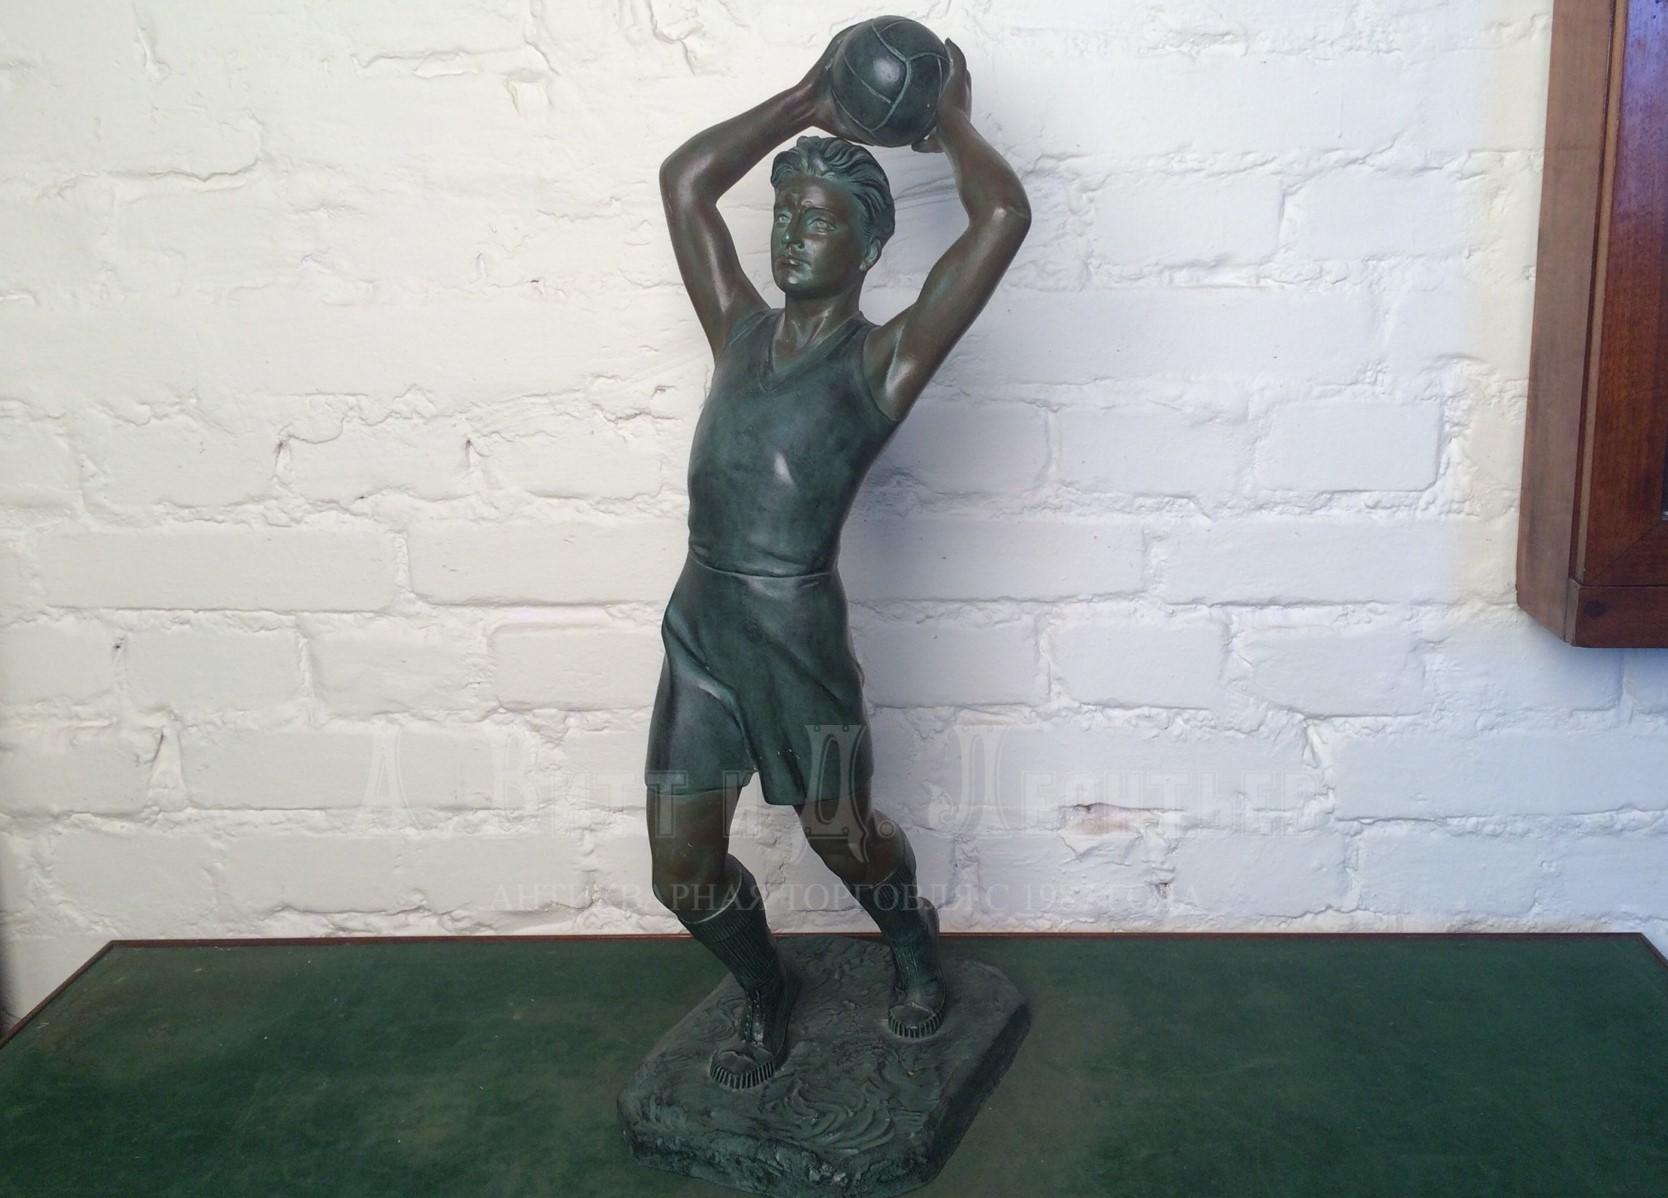 Скульптура старинная антикварная скульптура Футболист Вбрасывание мяча из-за боковой в футбол.